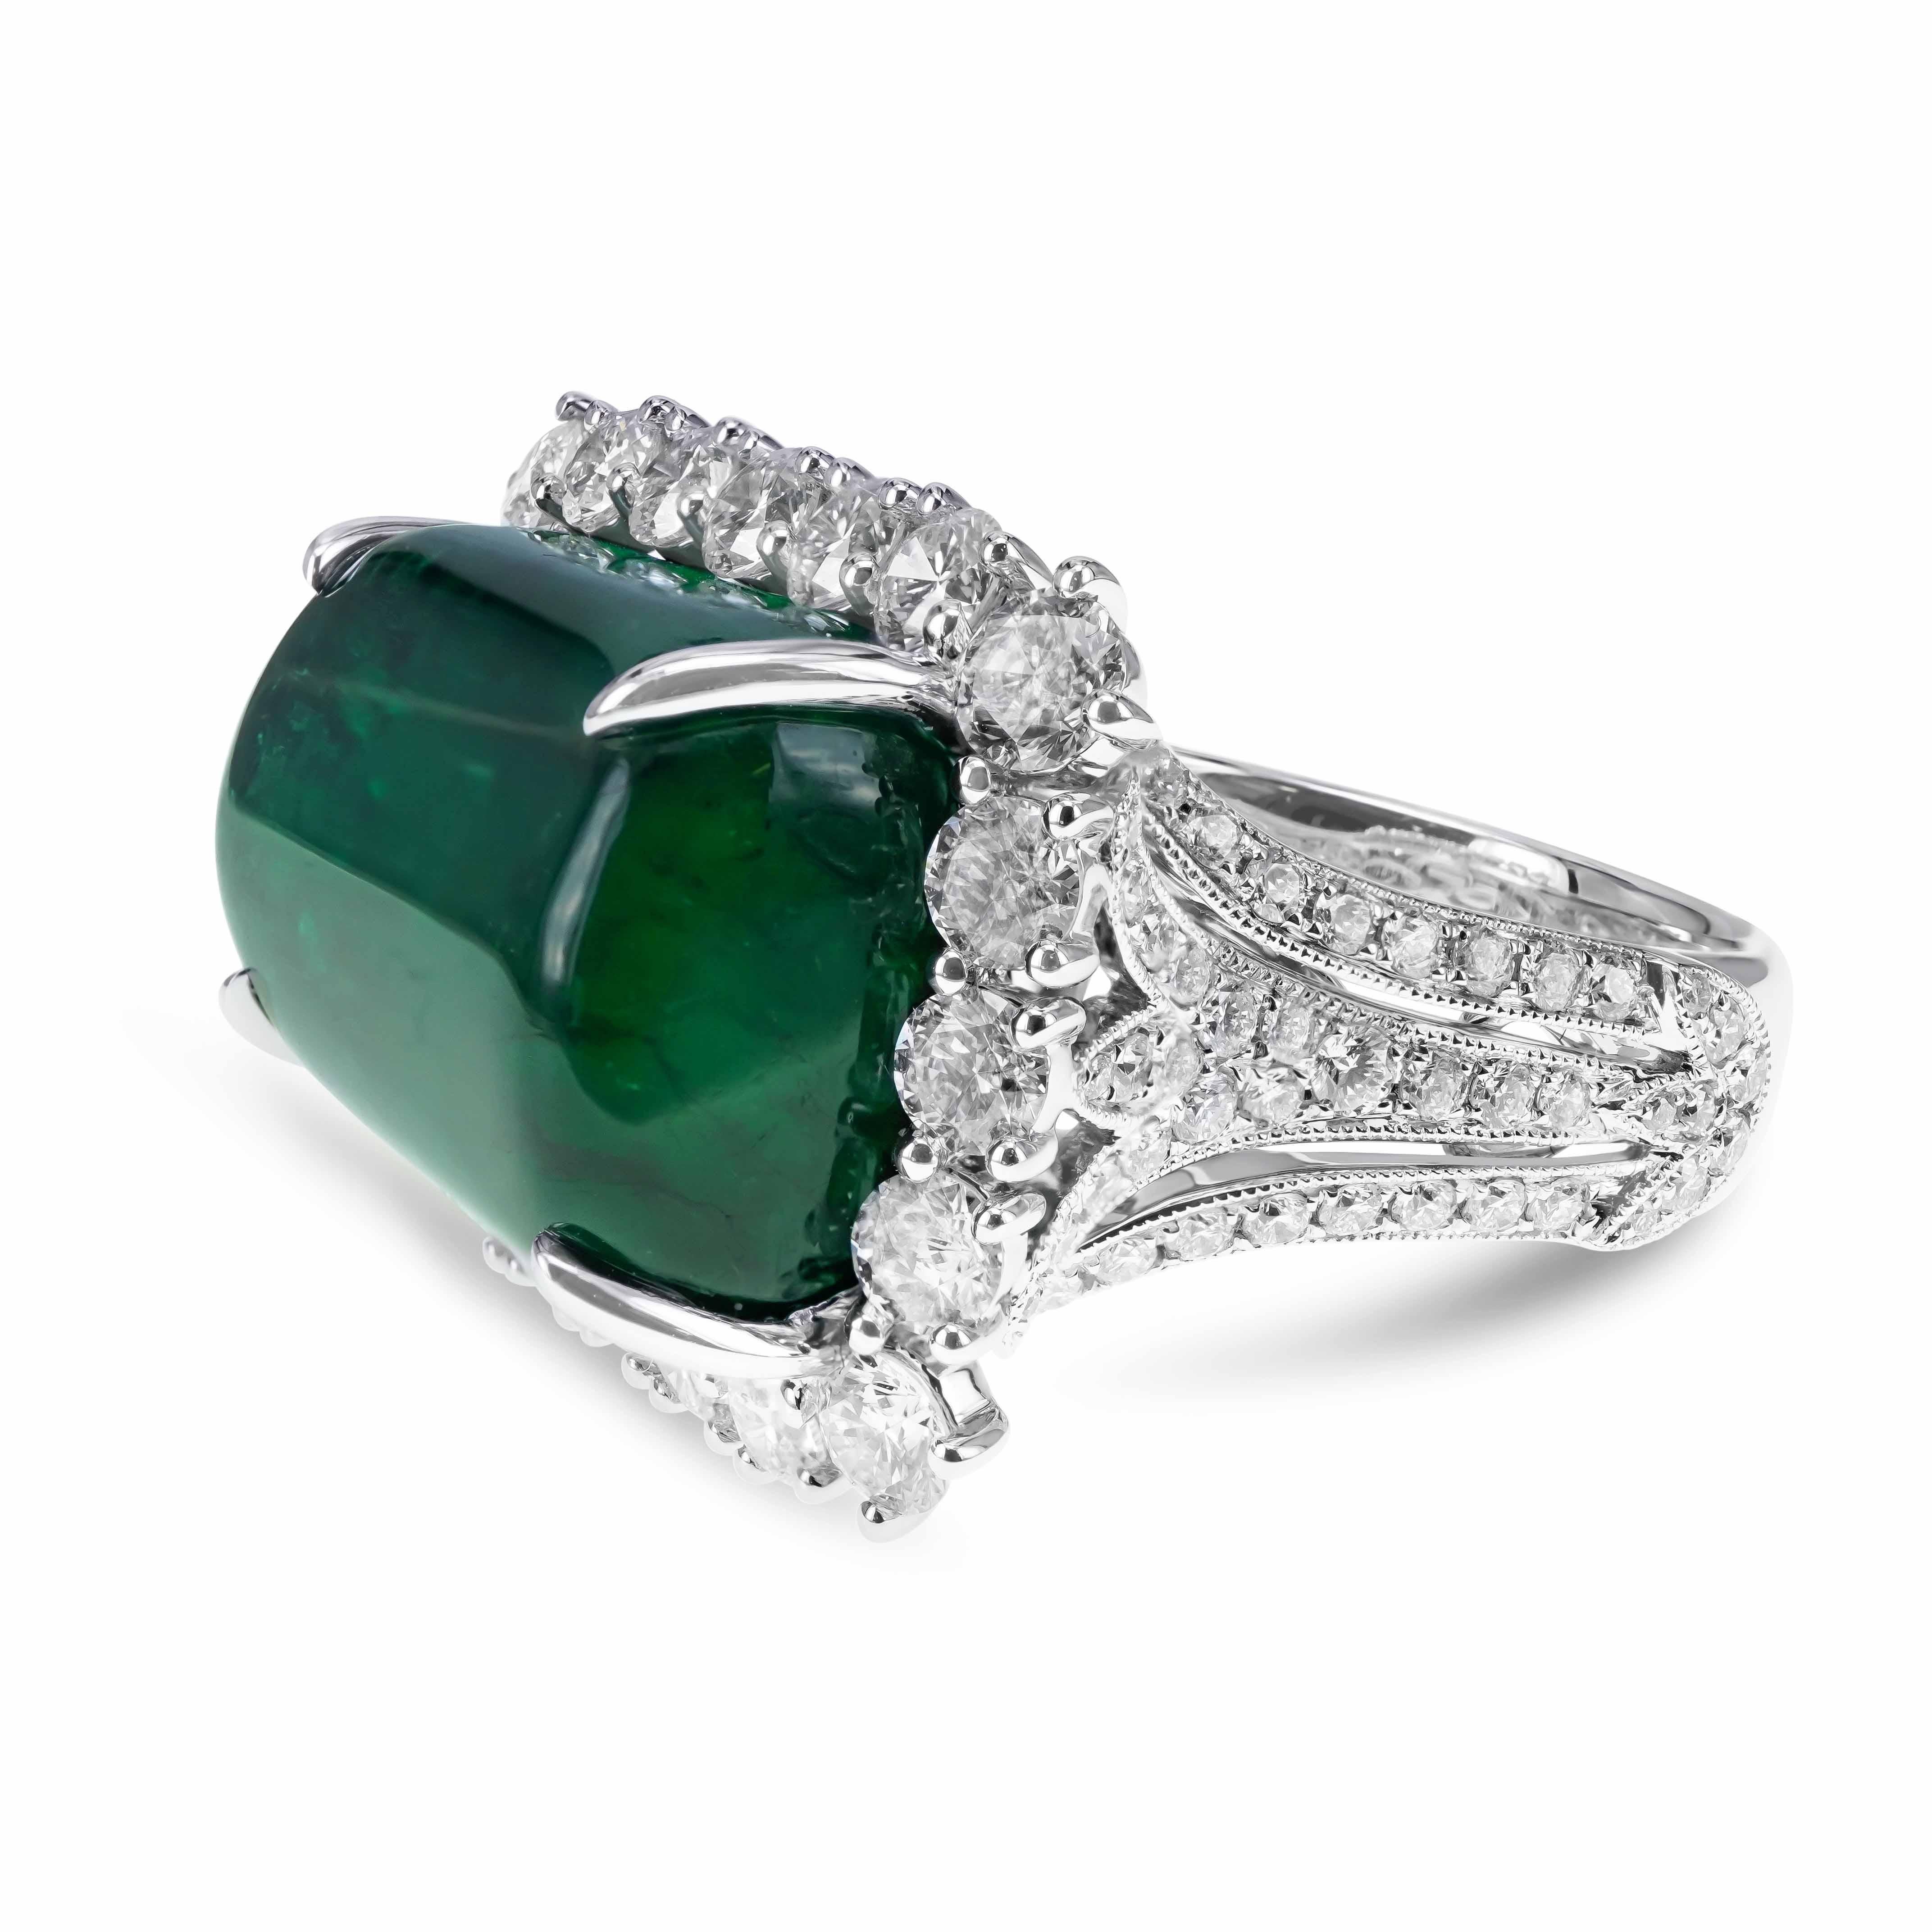 Ein 21,40 Karat großer, lebhaft grüner, trommelförmiger Smaragd ist zusammen mit einem 2,63 Karat großen, runden weißen Brillanten gefasst. Der Ring ist aus 18-karätigem Gold und wurde in Hongkong handgefertigt. Die Einzelheiten zu den Diamanten